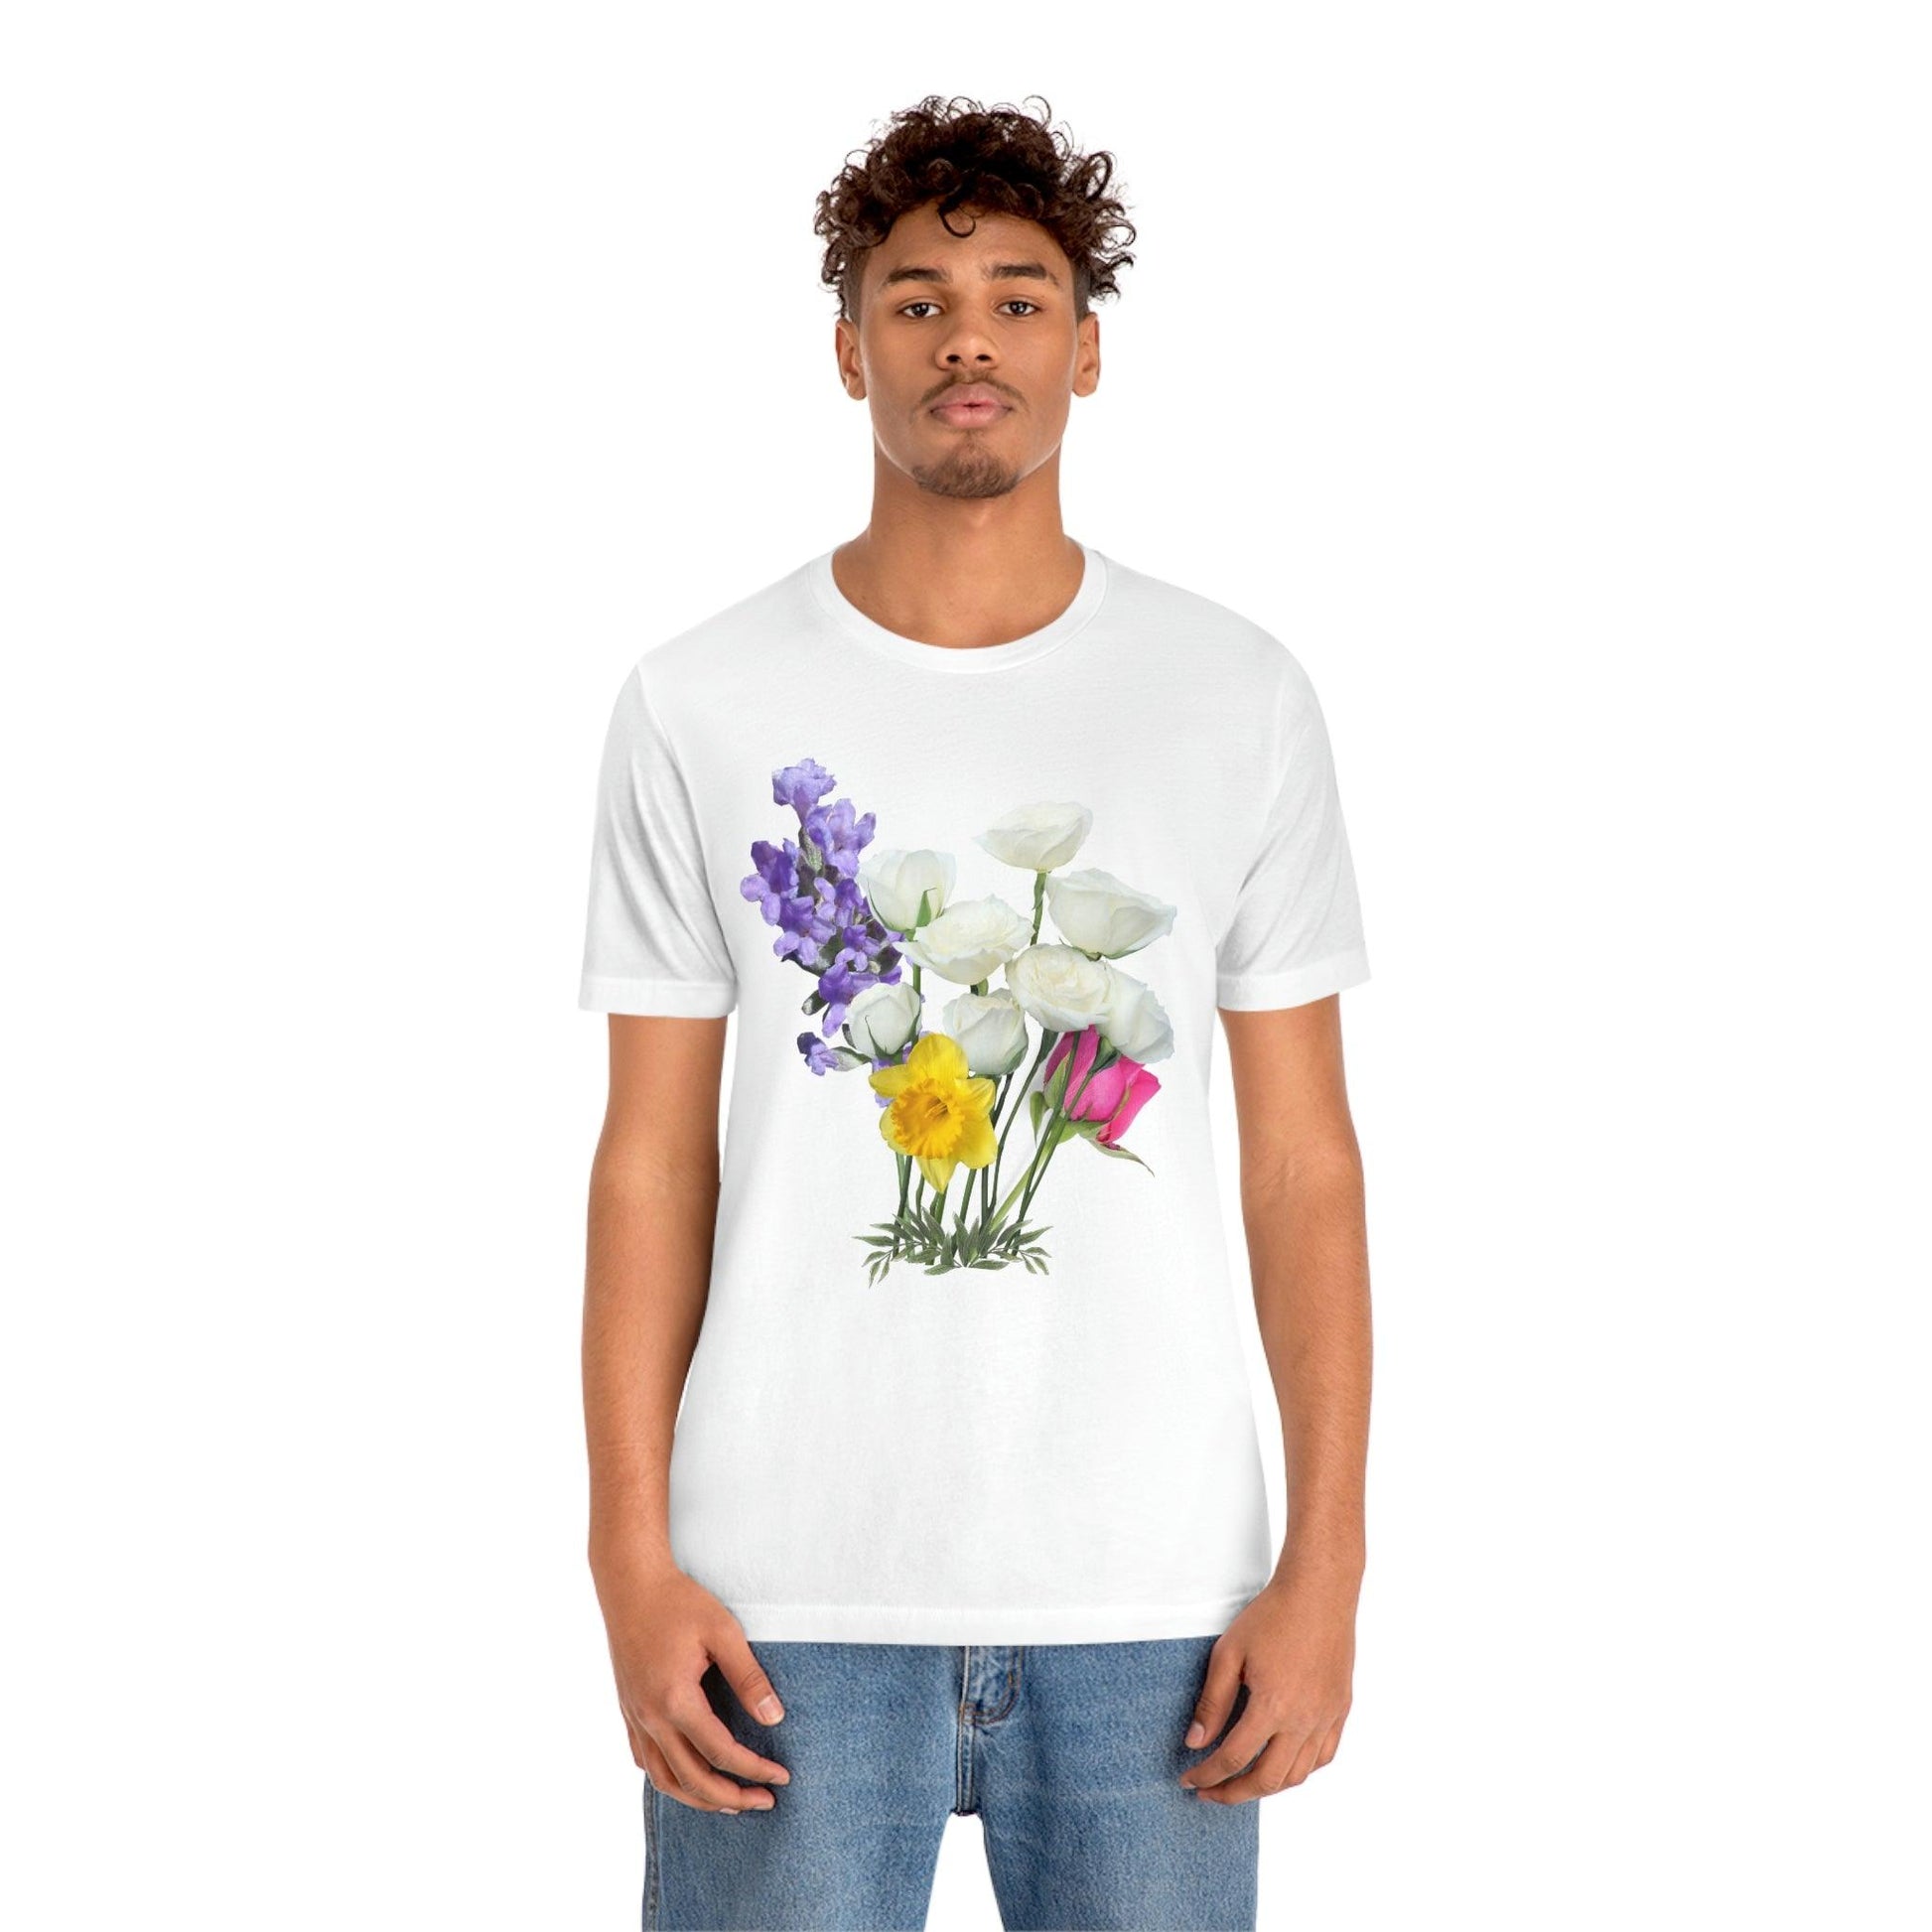 Cute Flower shirt - Nature lover Shirt - Flower lover shirt - Giftsmojo